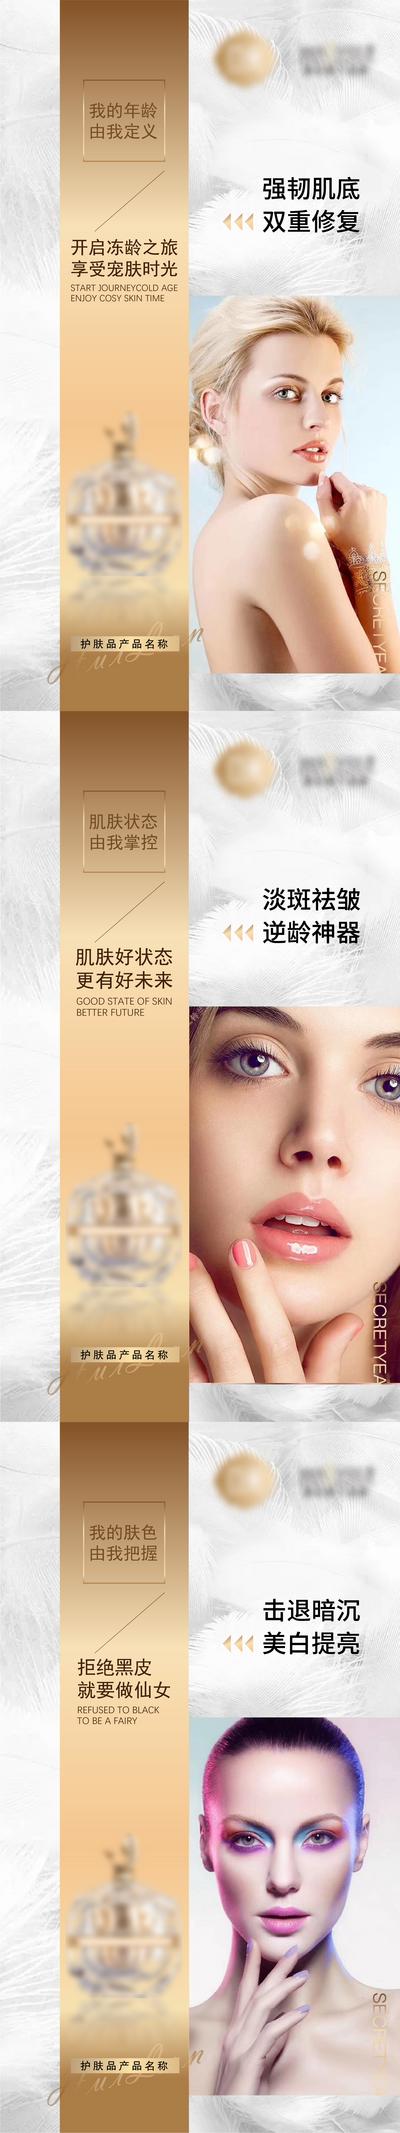 【南门网】海报 微商 化妆品 护肤品 产品 人物